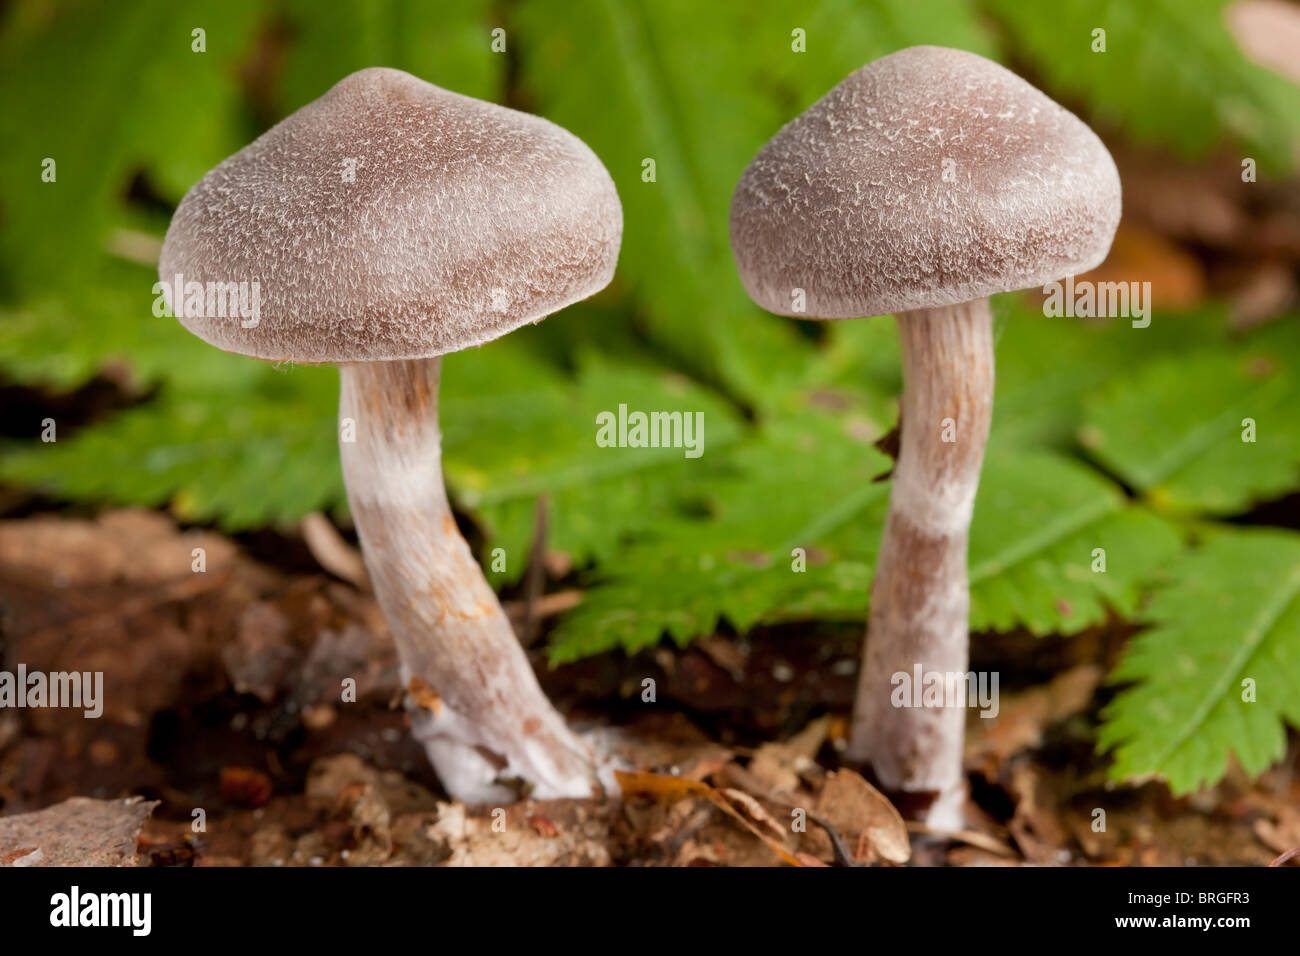 Gilled mushrooms (Cortinarius pulchellus) Stock Photo